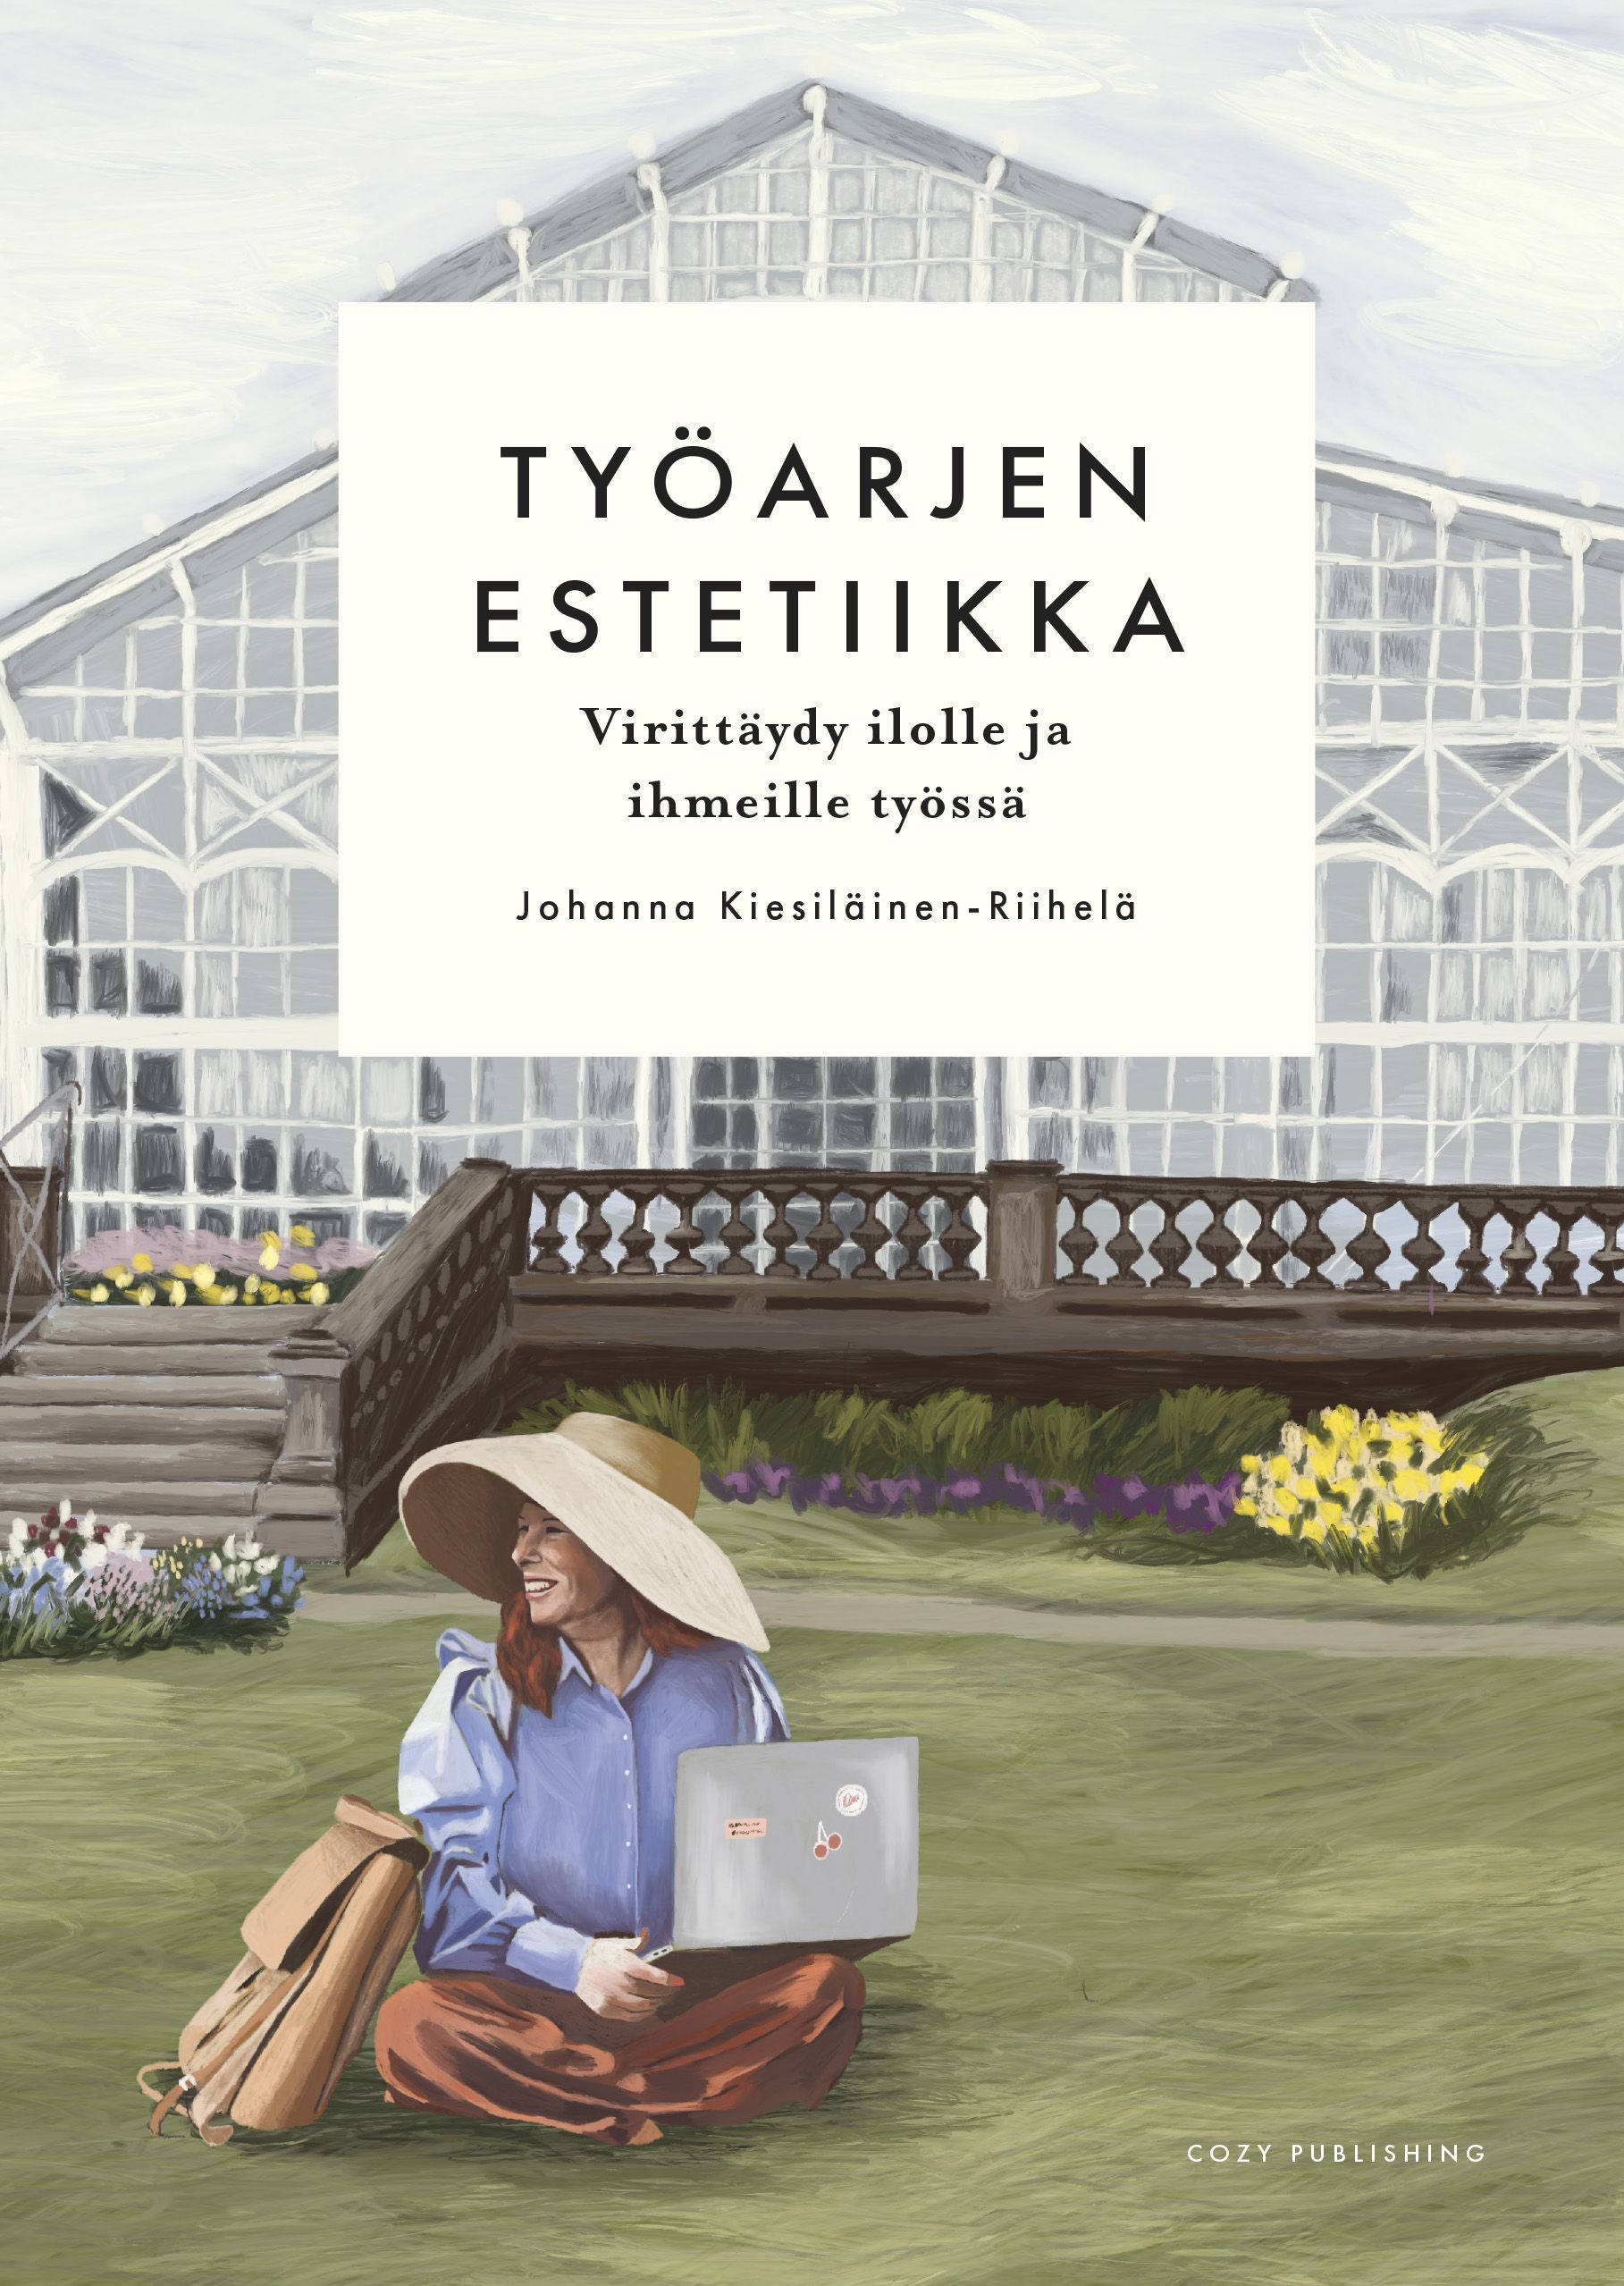 Johanna Kiesiläinen-Riihelä : Työarjen estetiikka – virittäydy ilolle ja ihmeille työssä